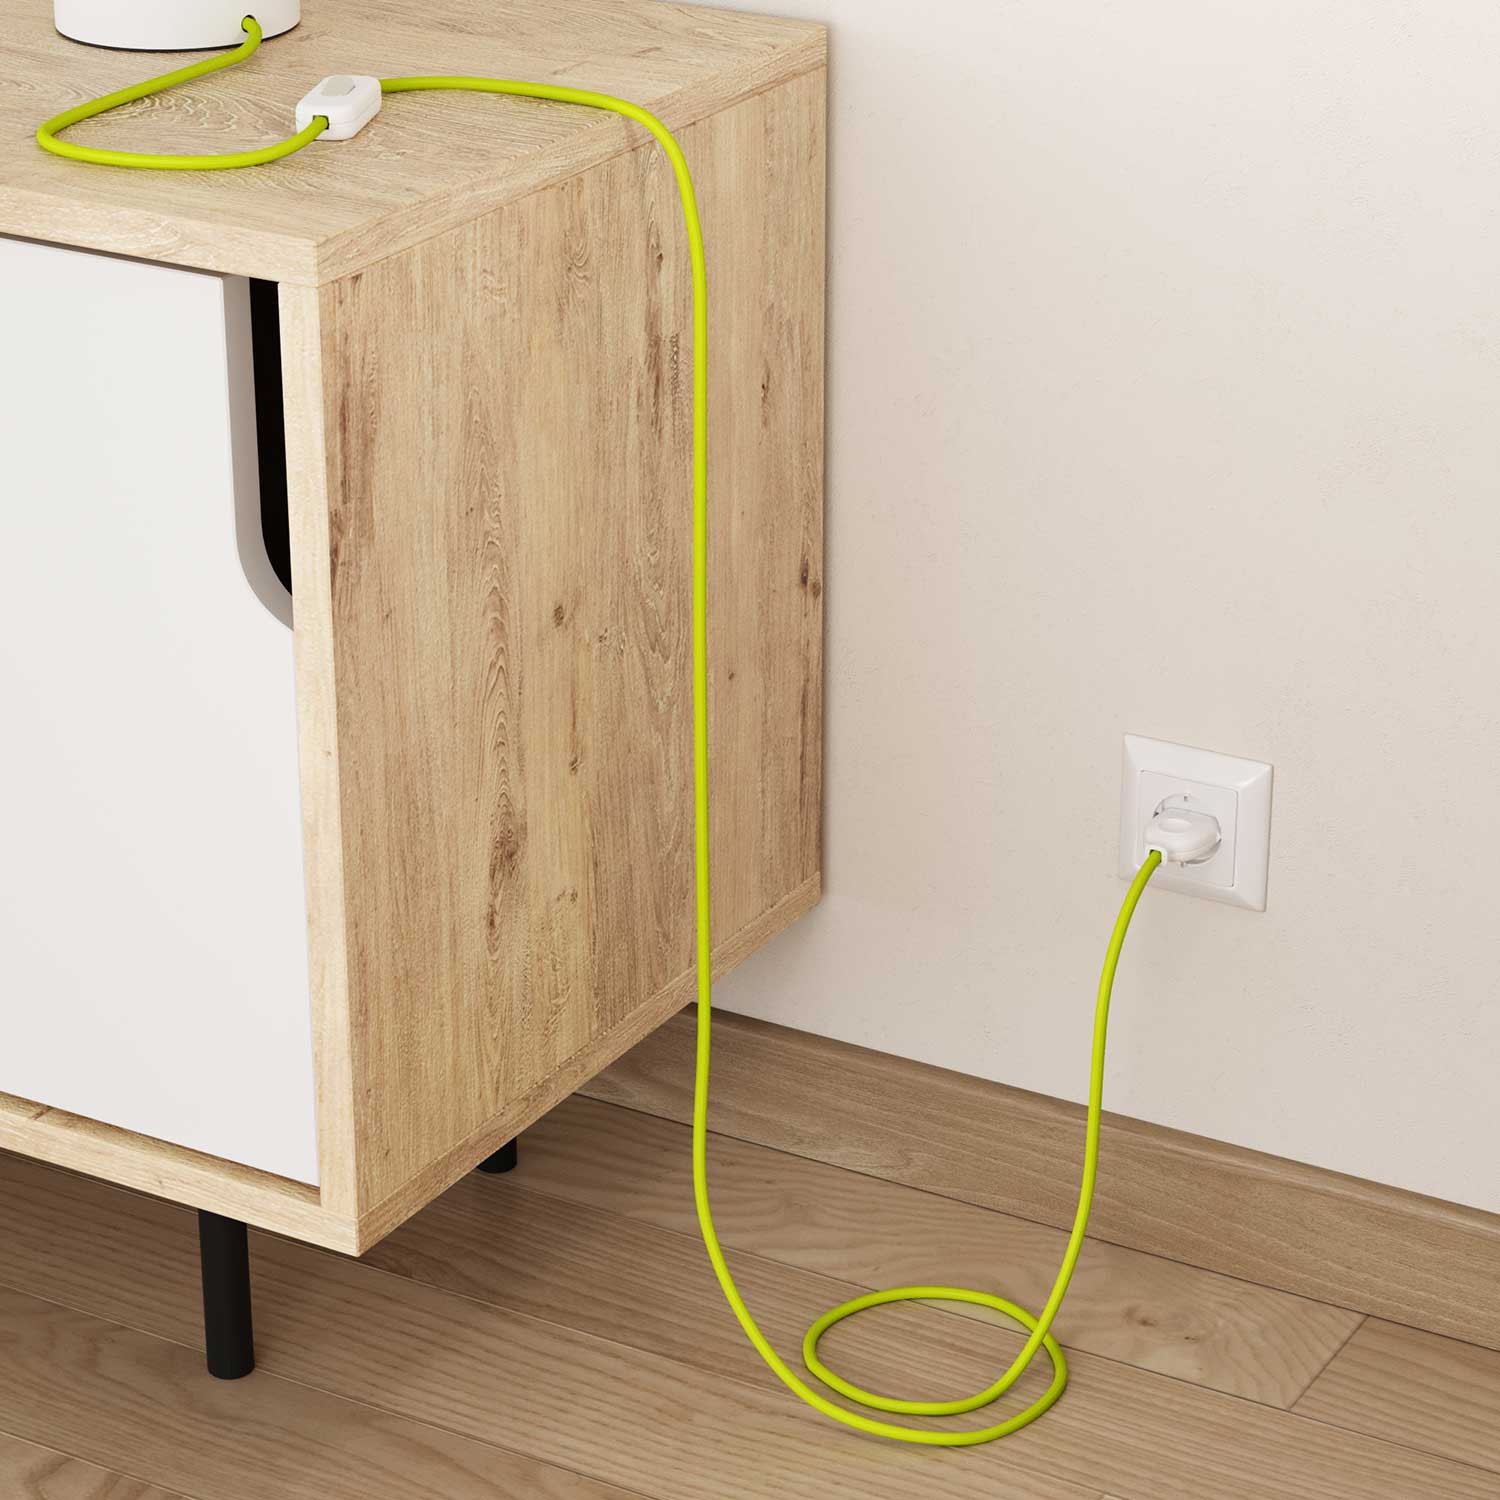 Elektrisches Kabel rund überzogen mit Textil-Seideneffekt Einfarbig Gelb Fluo RF10